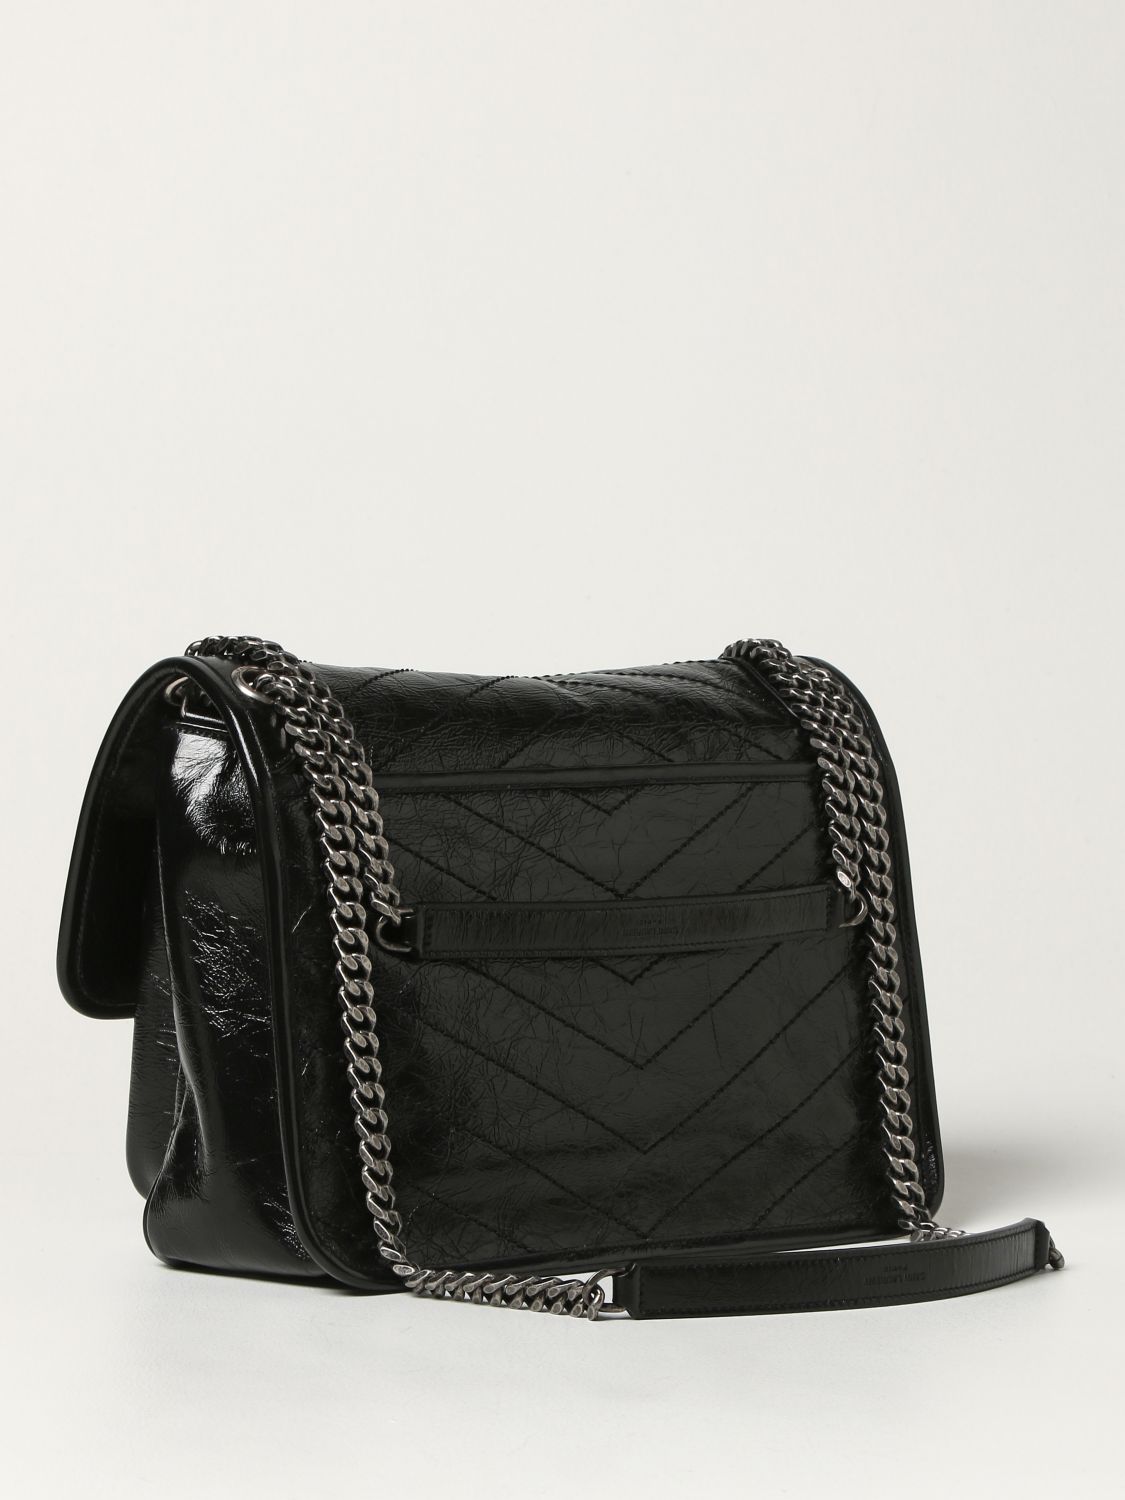 SAINT LAURENT: Niki Medium wrinkled effect leather bag - Black | Saint ...